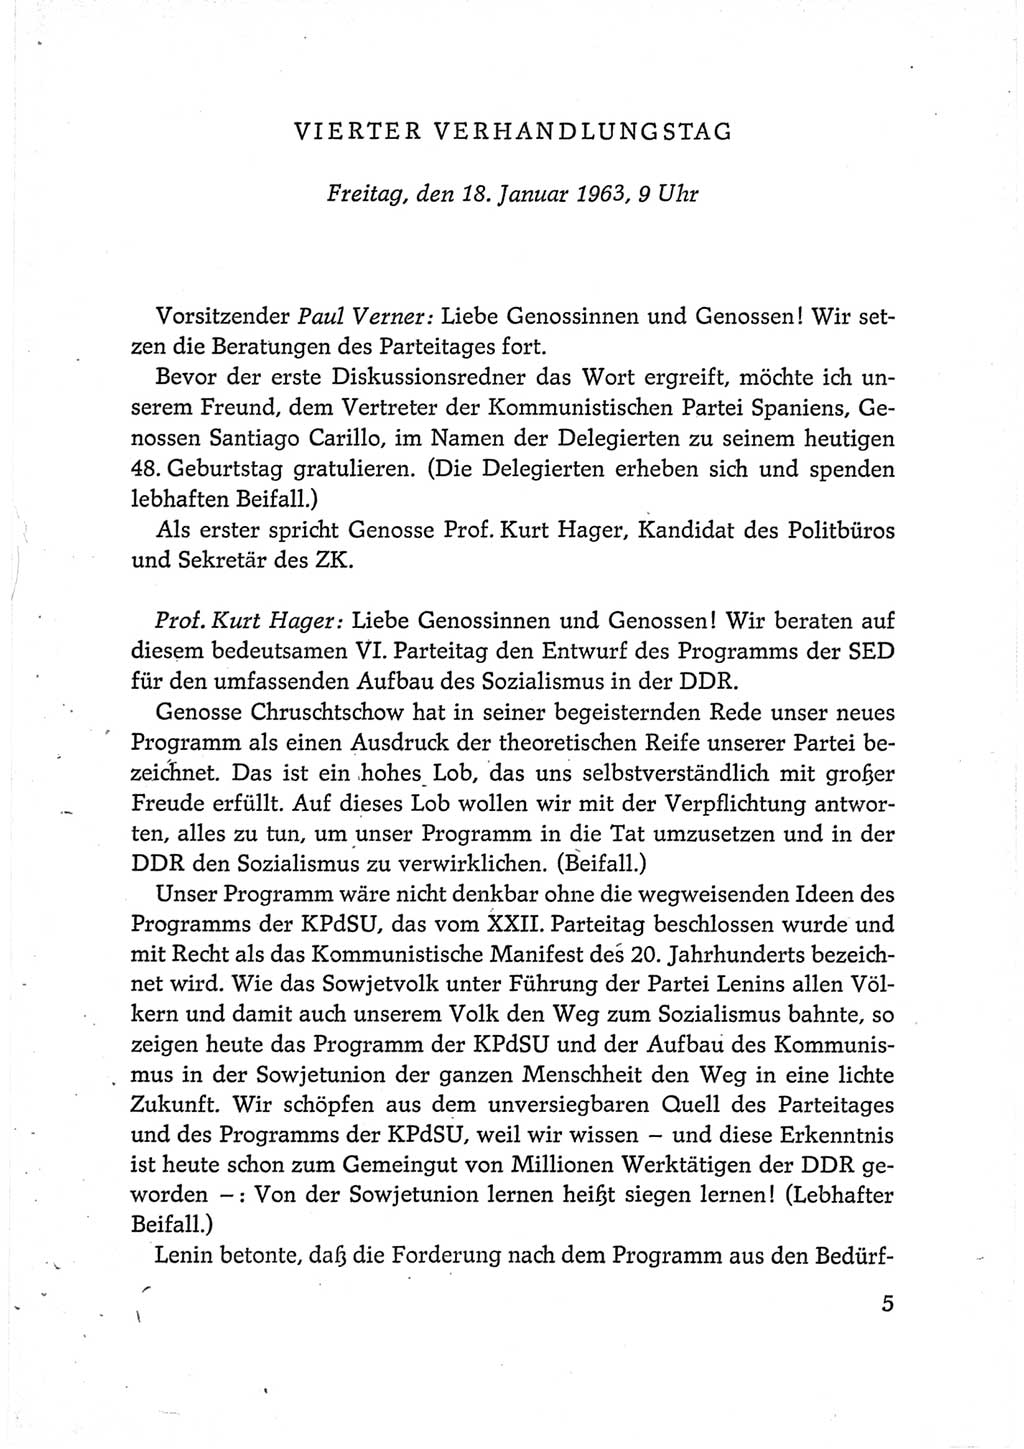 Protokoll der Verhandlungen des Ⅵ. Parteitages der Sozialistischen Einheitspartei Deutschlands (SED) [Deutsche Demokratische Republik (DDR)] 1963, Band Ⅱ, Seite 5 (Prot. Verh. Ⅵ. PT SED DDR 1963, Bd. Ⅱ, S. 5)